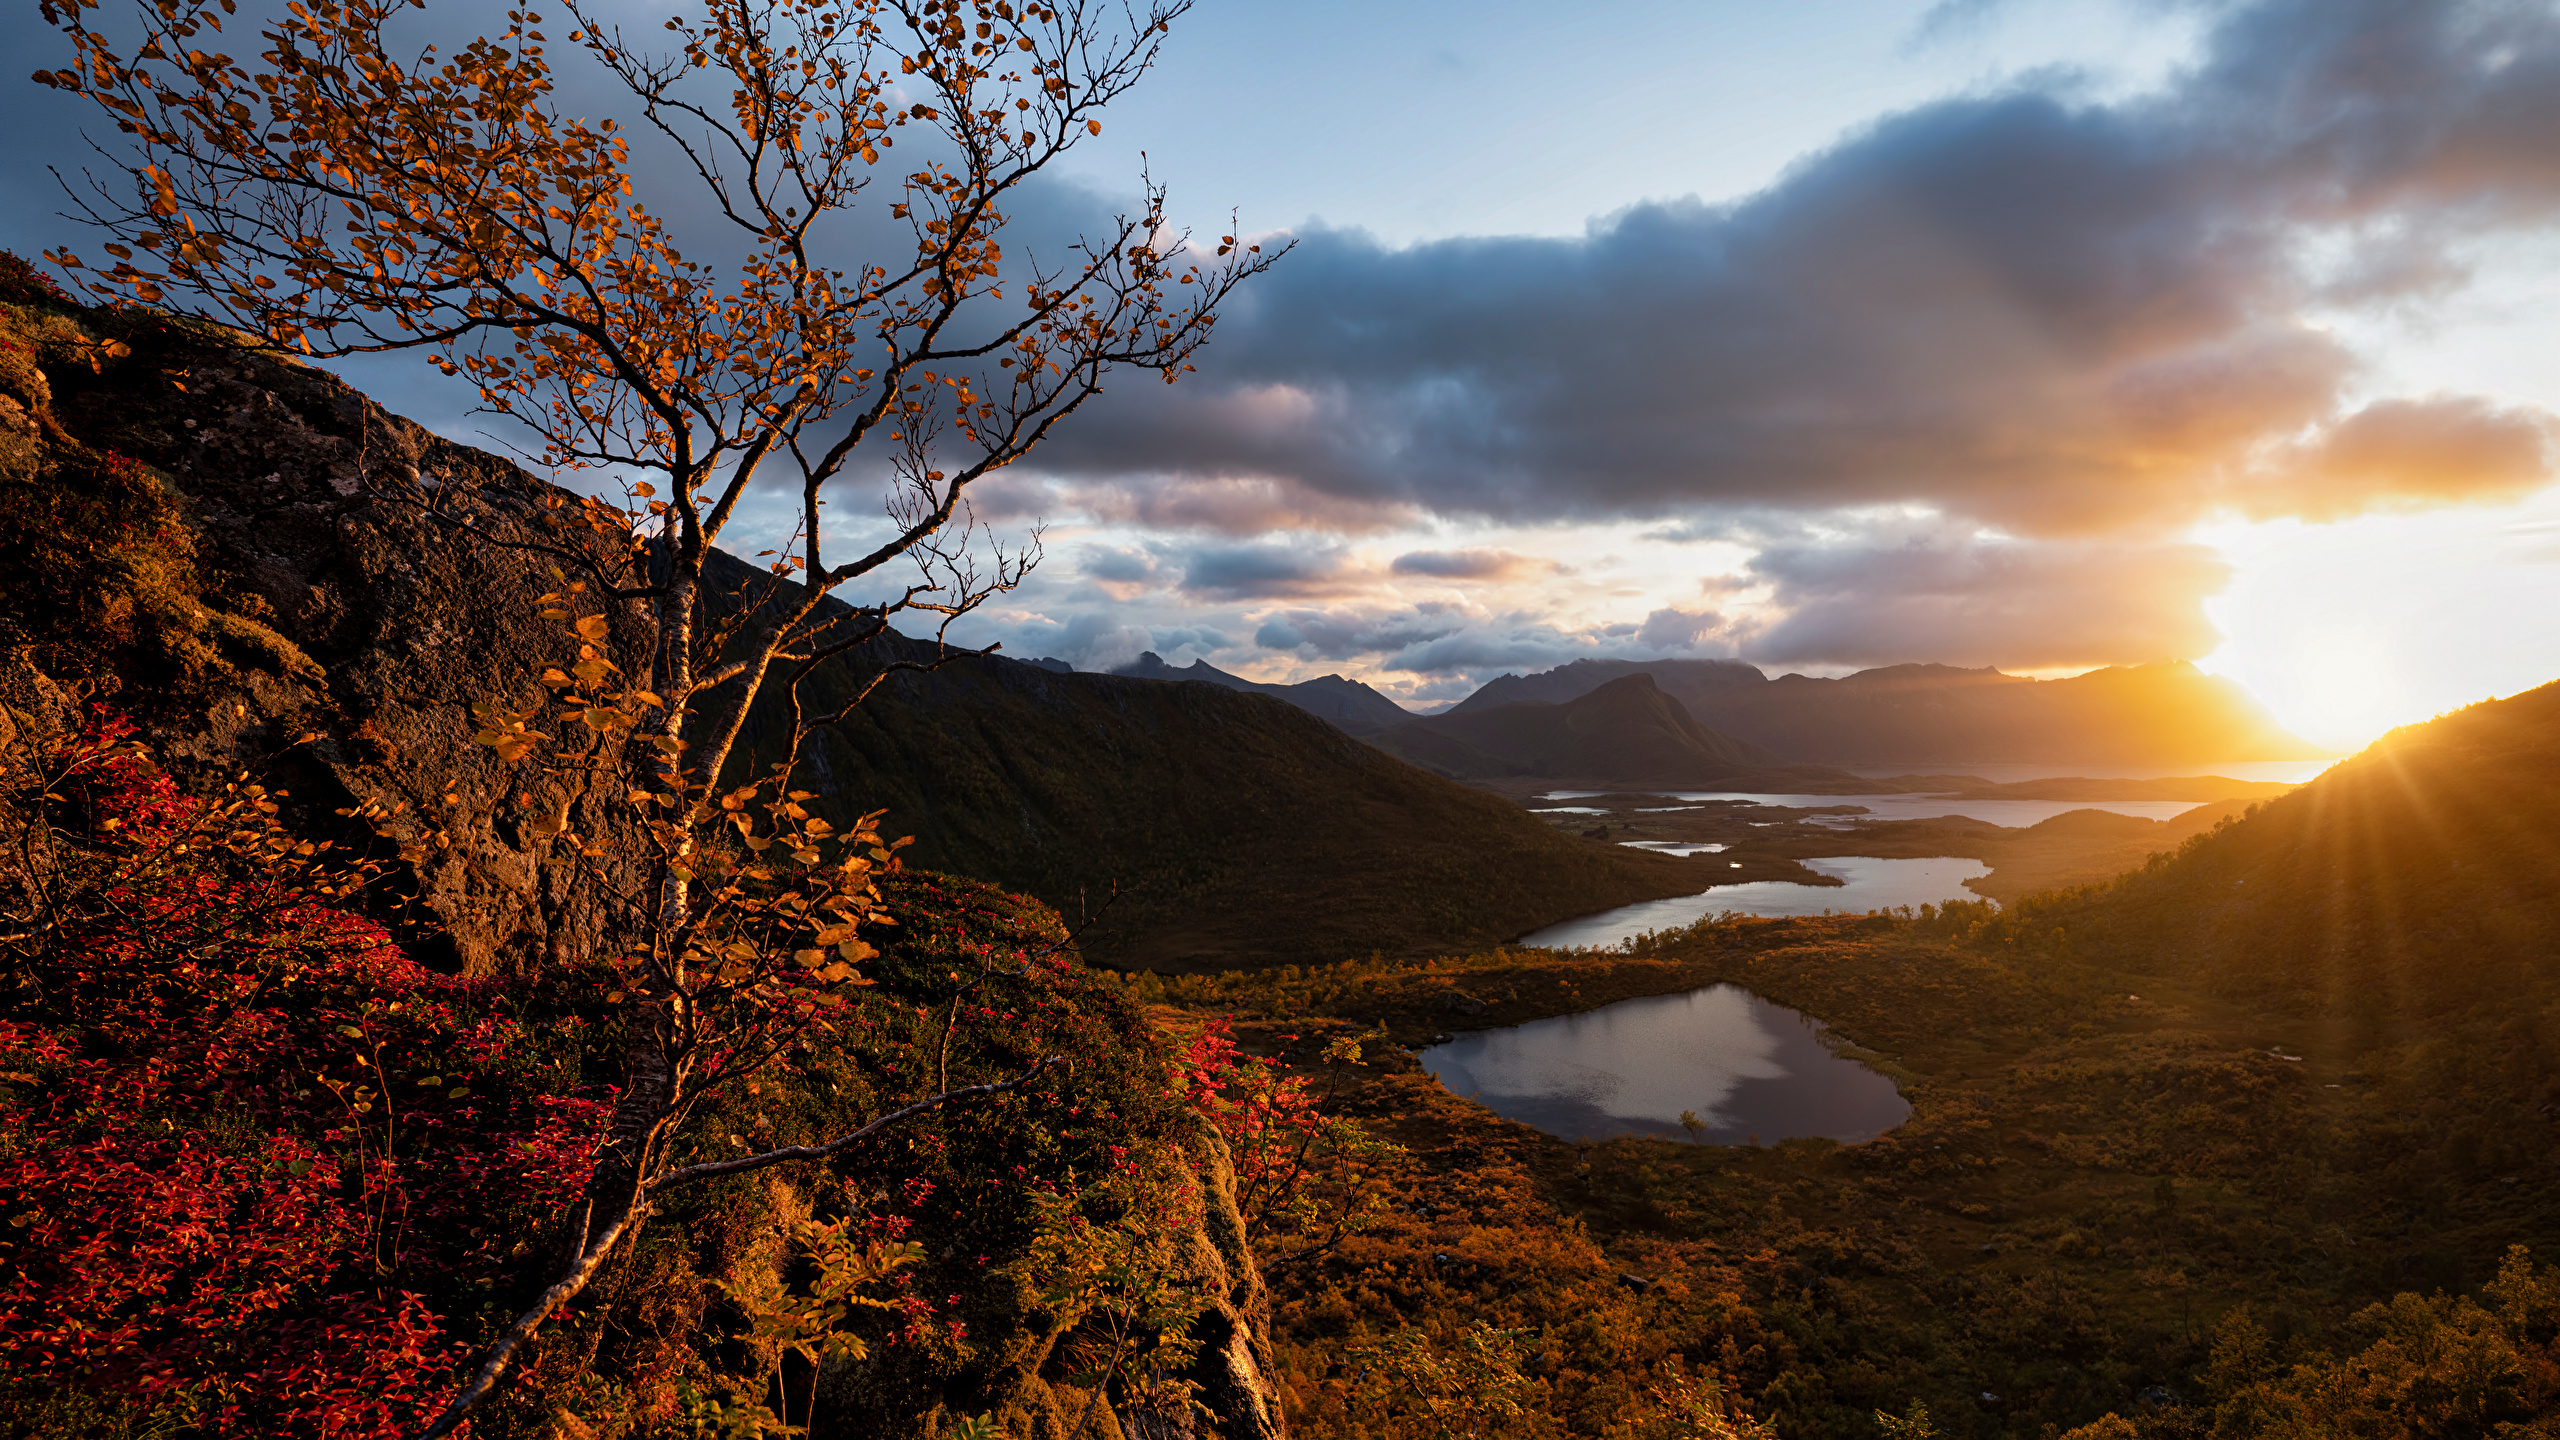 Обои для рабочего стола Лофотенские острова Норвегия Осень Солнце Природа рассвет и закат Облака 2560x1440 солнца осенние Рассветы и закаты облако облачно